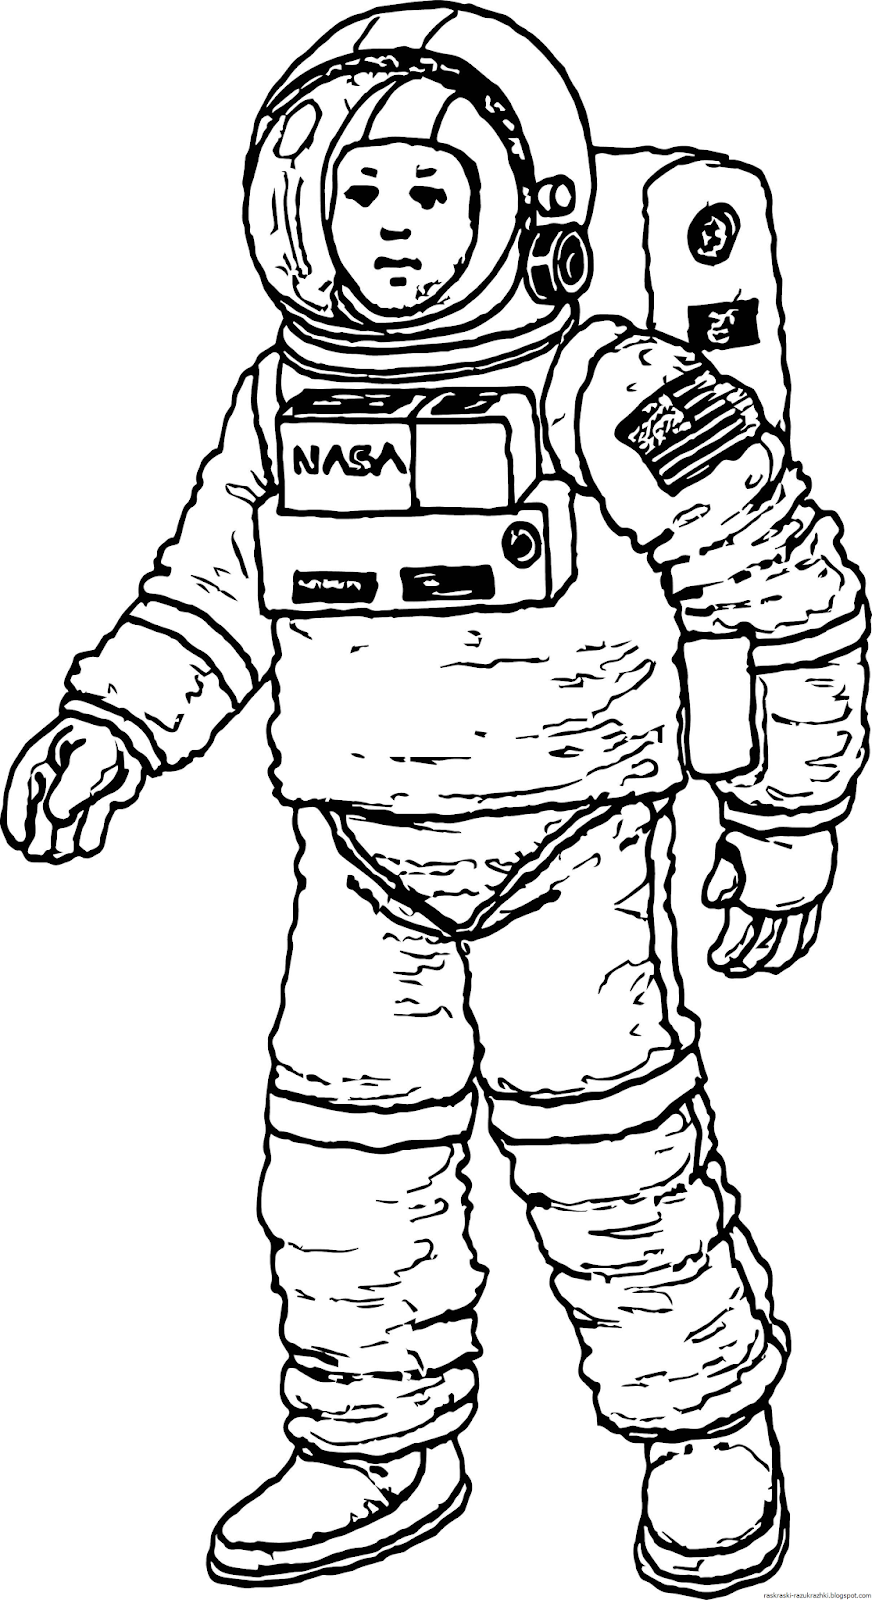 Скафандр космонавта для детей. Космонавт раскраска для детей. Раскраска про космос и Космонавтов для детей. Космонавт рисунок. Рисунок Космонавта в скафандре для детей.